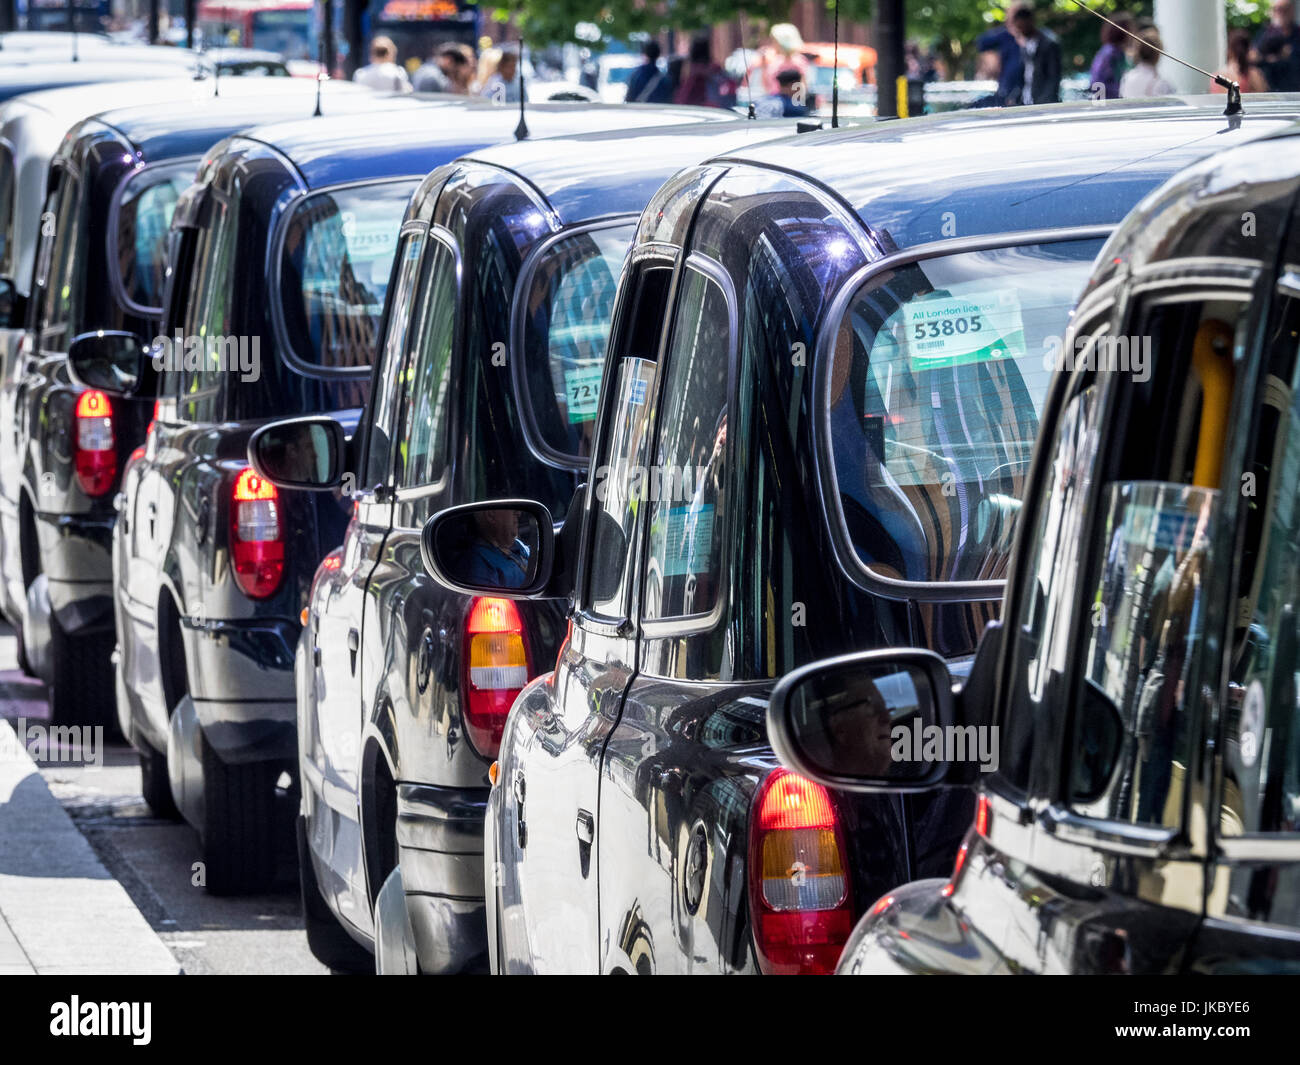 Londra Taxi Black Cabs - Taxi attendere per passeggeri al di fuori del centro di Londra stazione ferroviaria Foto Stock